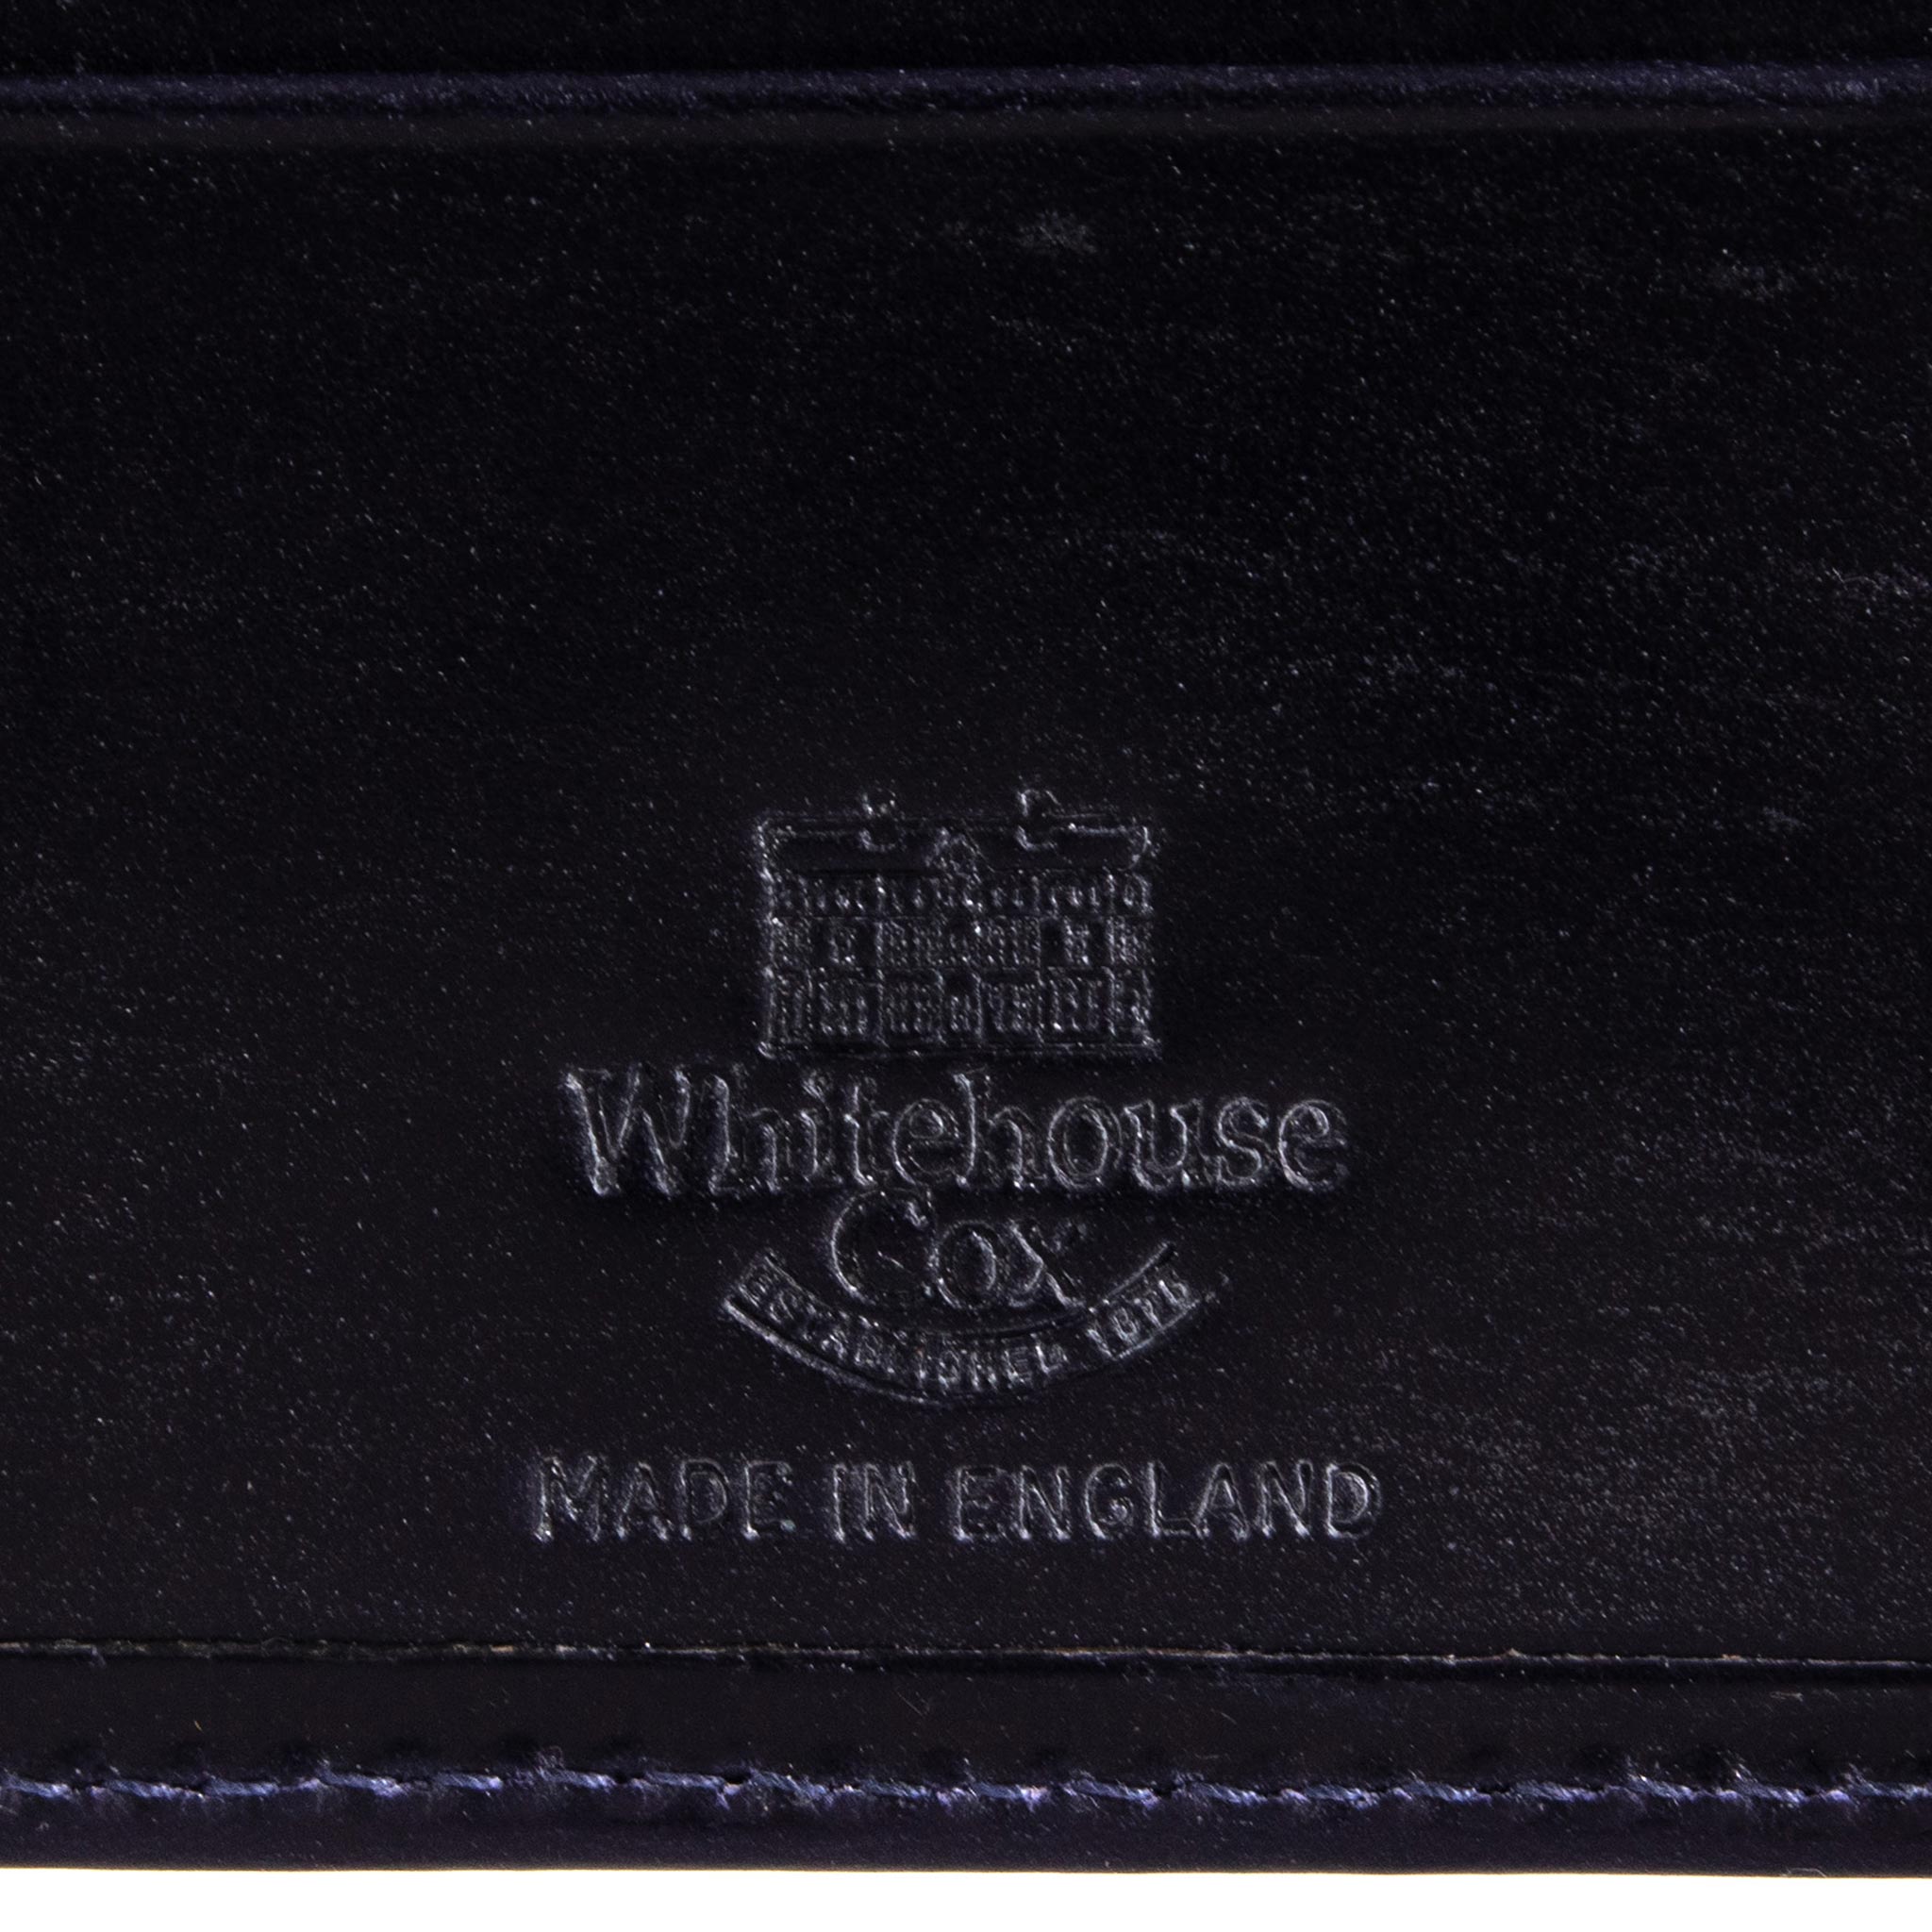 ホワイトハウスコックス WHITEHOUSE COX 財布 メンズ 二つ折り財布 ネイビー NOTE CASE BRIDLE S5571 NAVY